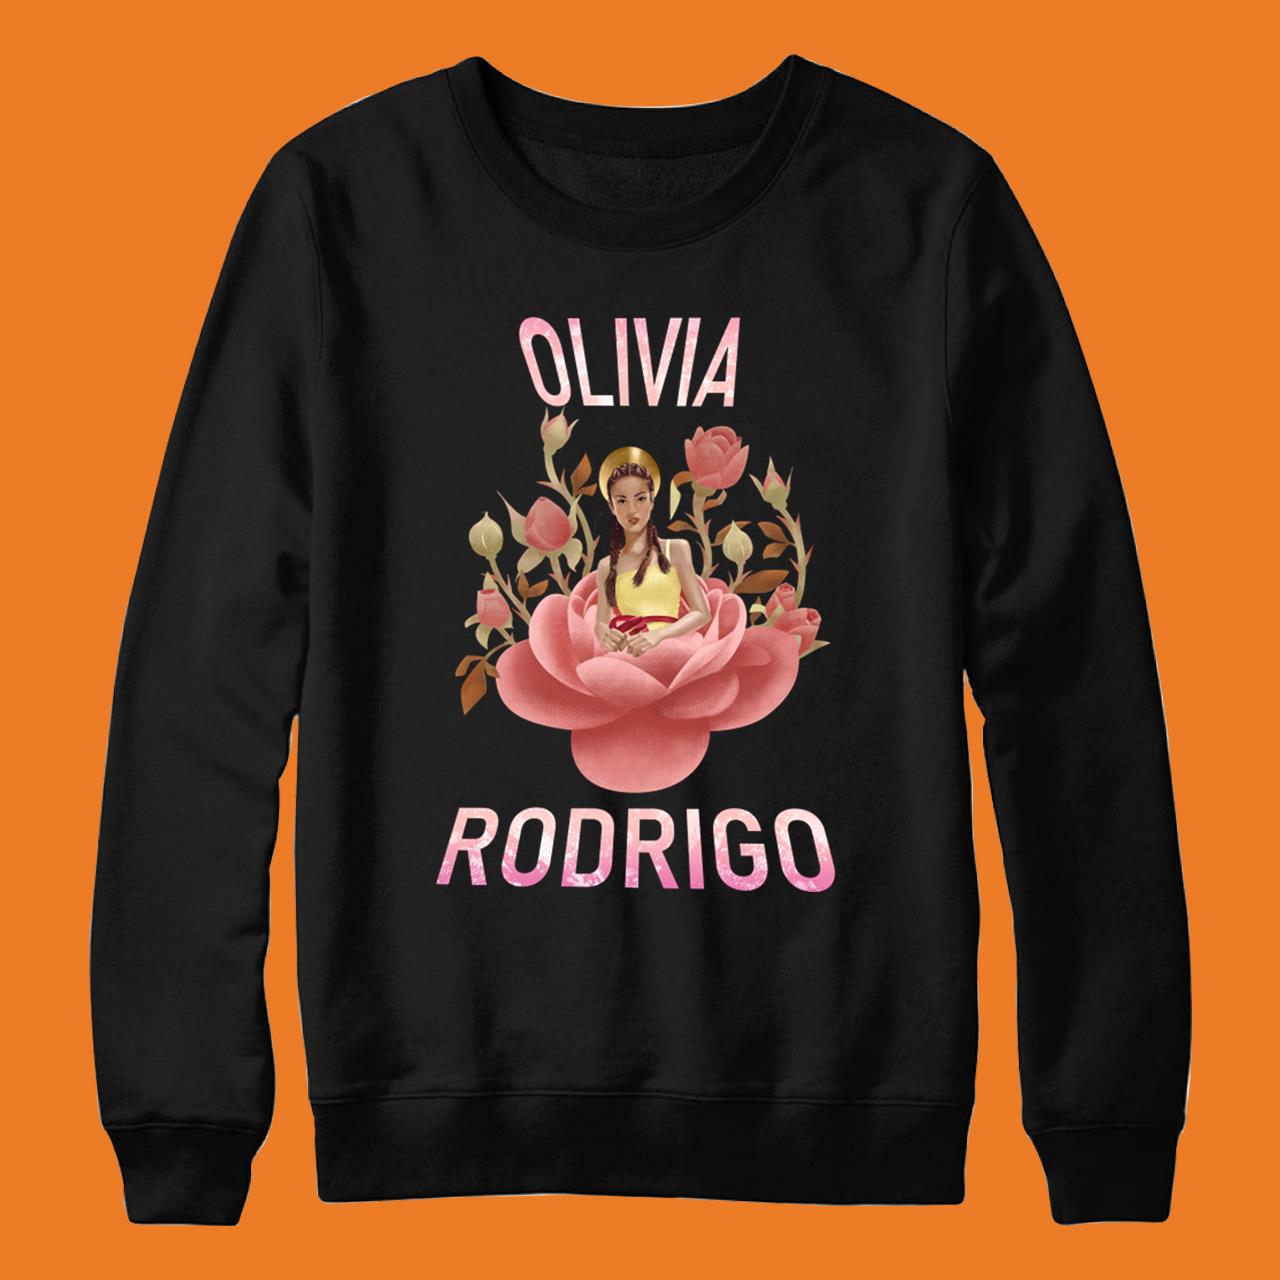 Olivia Rodrigo – Good 4 You T-Shirt